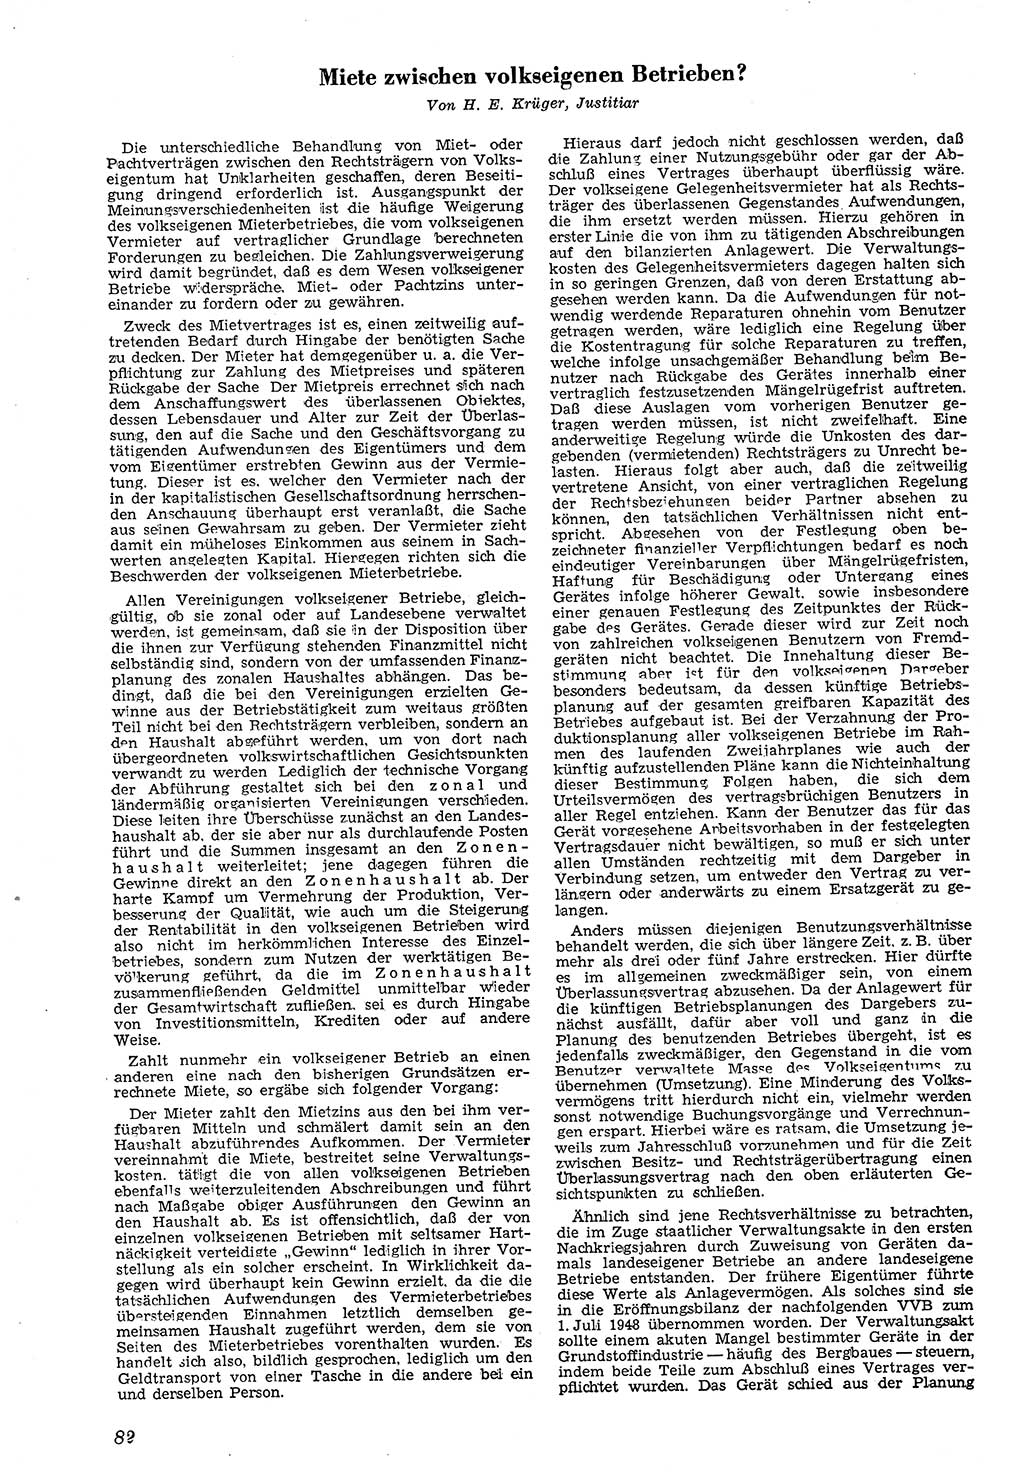 Neue Justiz (NJ), Zeitschrift für Recht und Rechtswissenschaft [Deutsche Demokratische Republik (DDR)], 4. Jahrgang 1950, Seite 82 (NJ DDR 1950, S. 82)